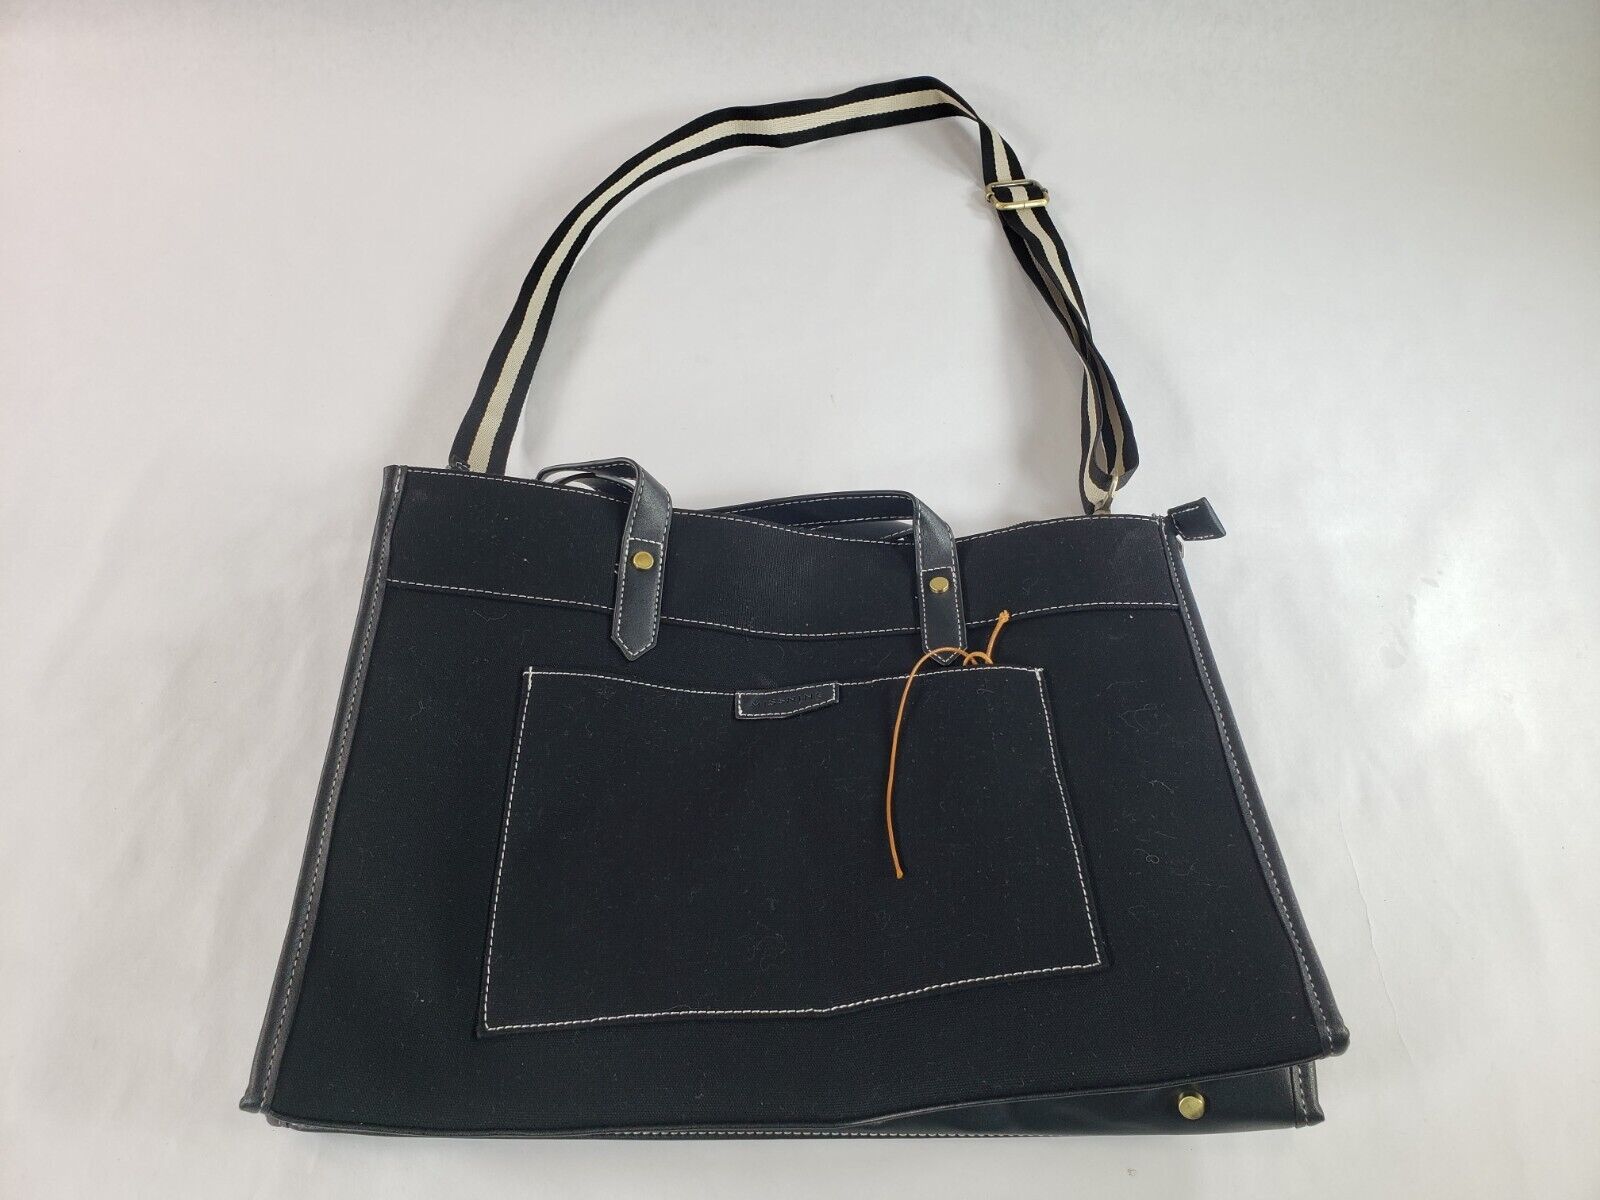 Missnine Laptop Tote Bag 15.6 inch Work Shoulder Bag Casual Briefcase Black